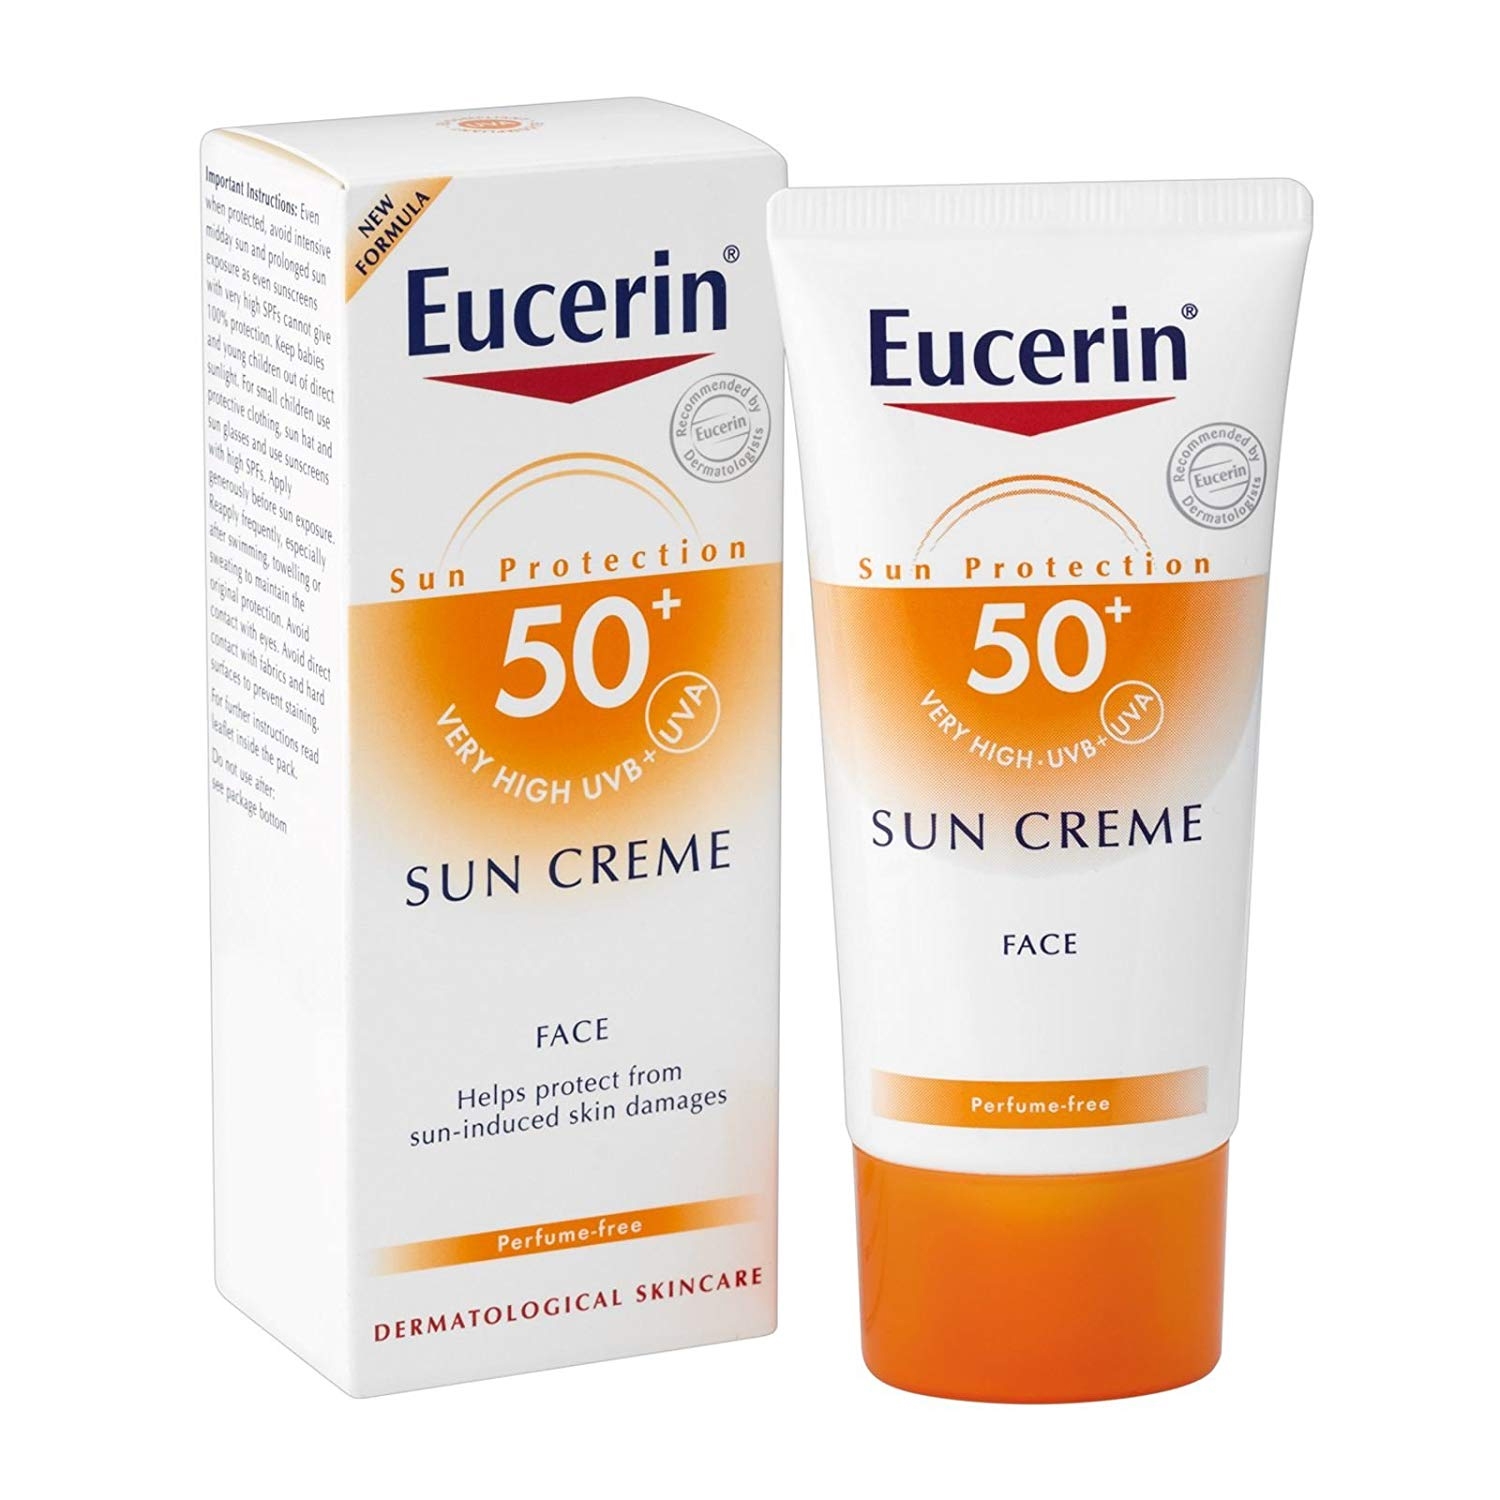 Eucerin sun crème visage 50+ - 50 ml